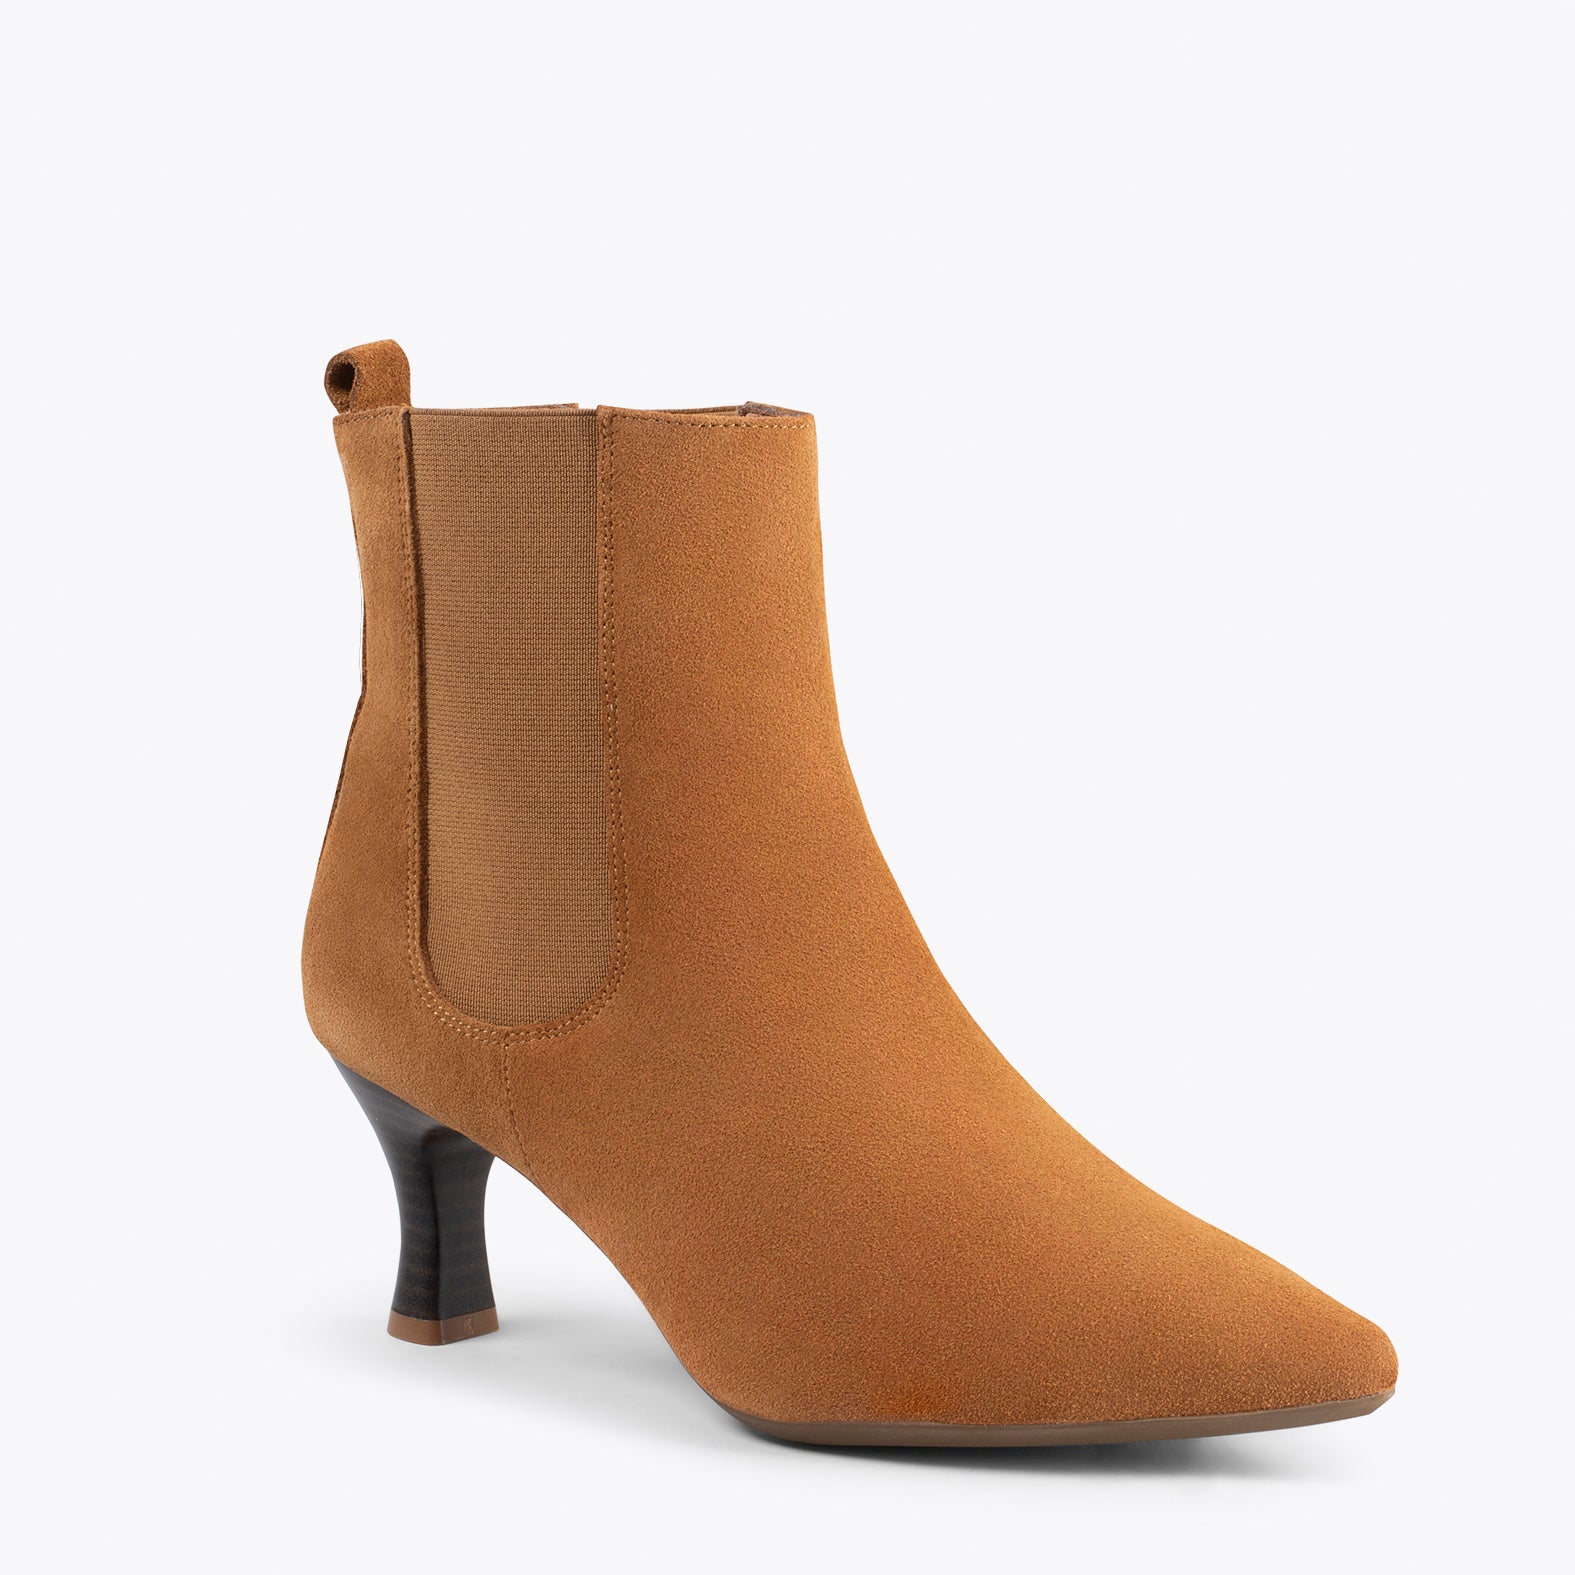 CHIC – CAMEL chelsea high heel booties